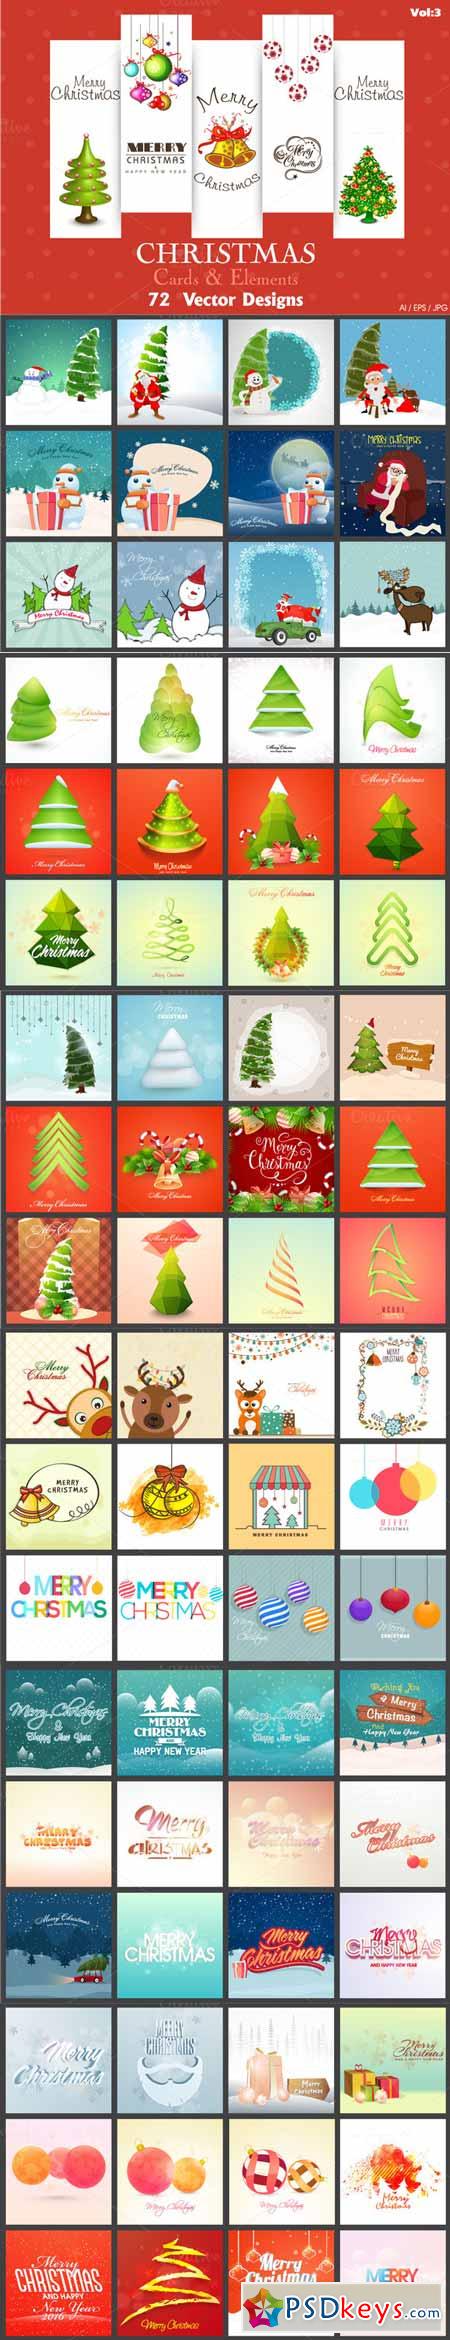 Creative Christmas Bundle - Vol 3 469071